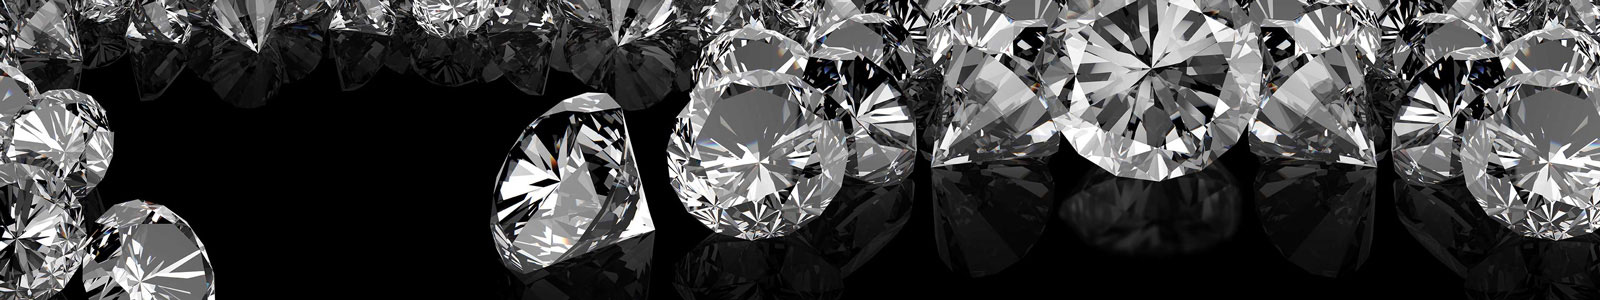 №5570 - Большие бриллианты на черном фоне